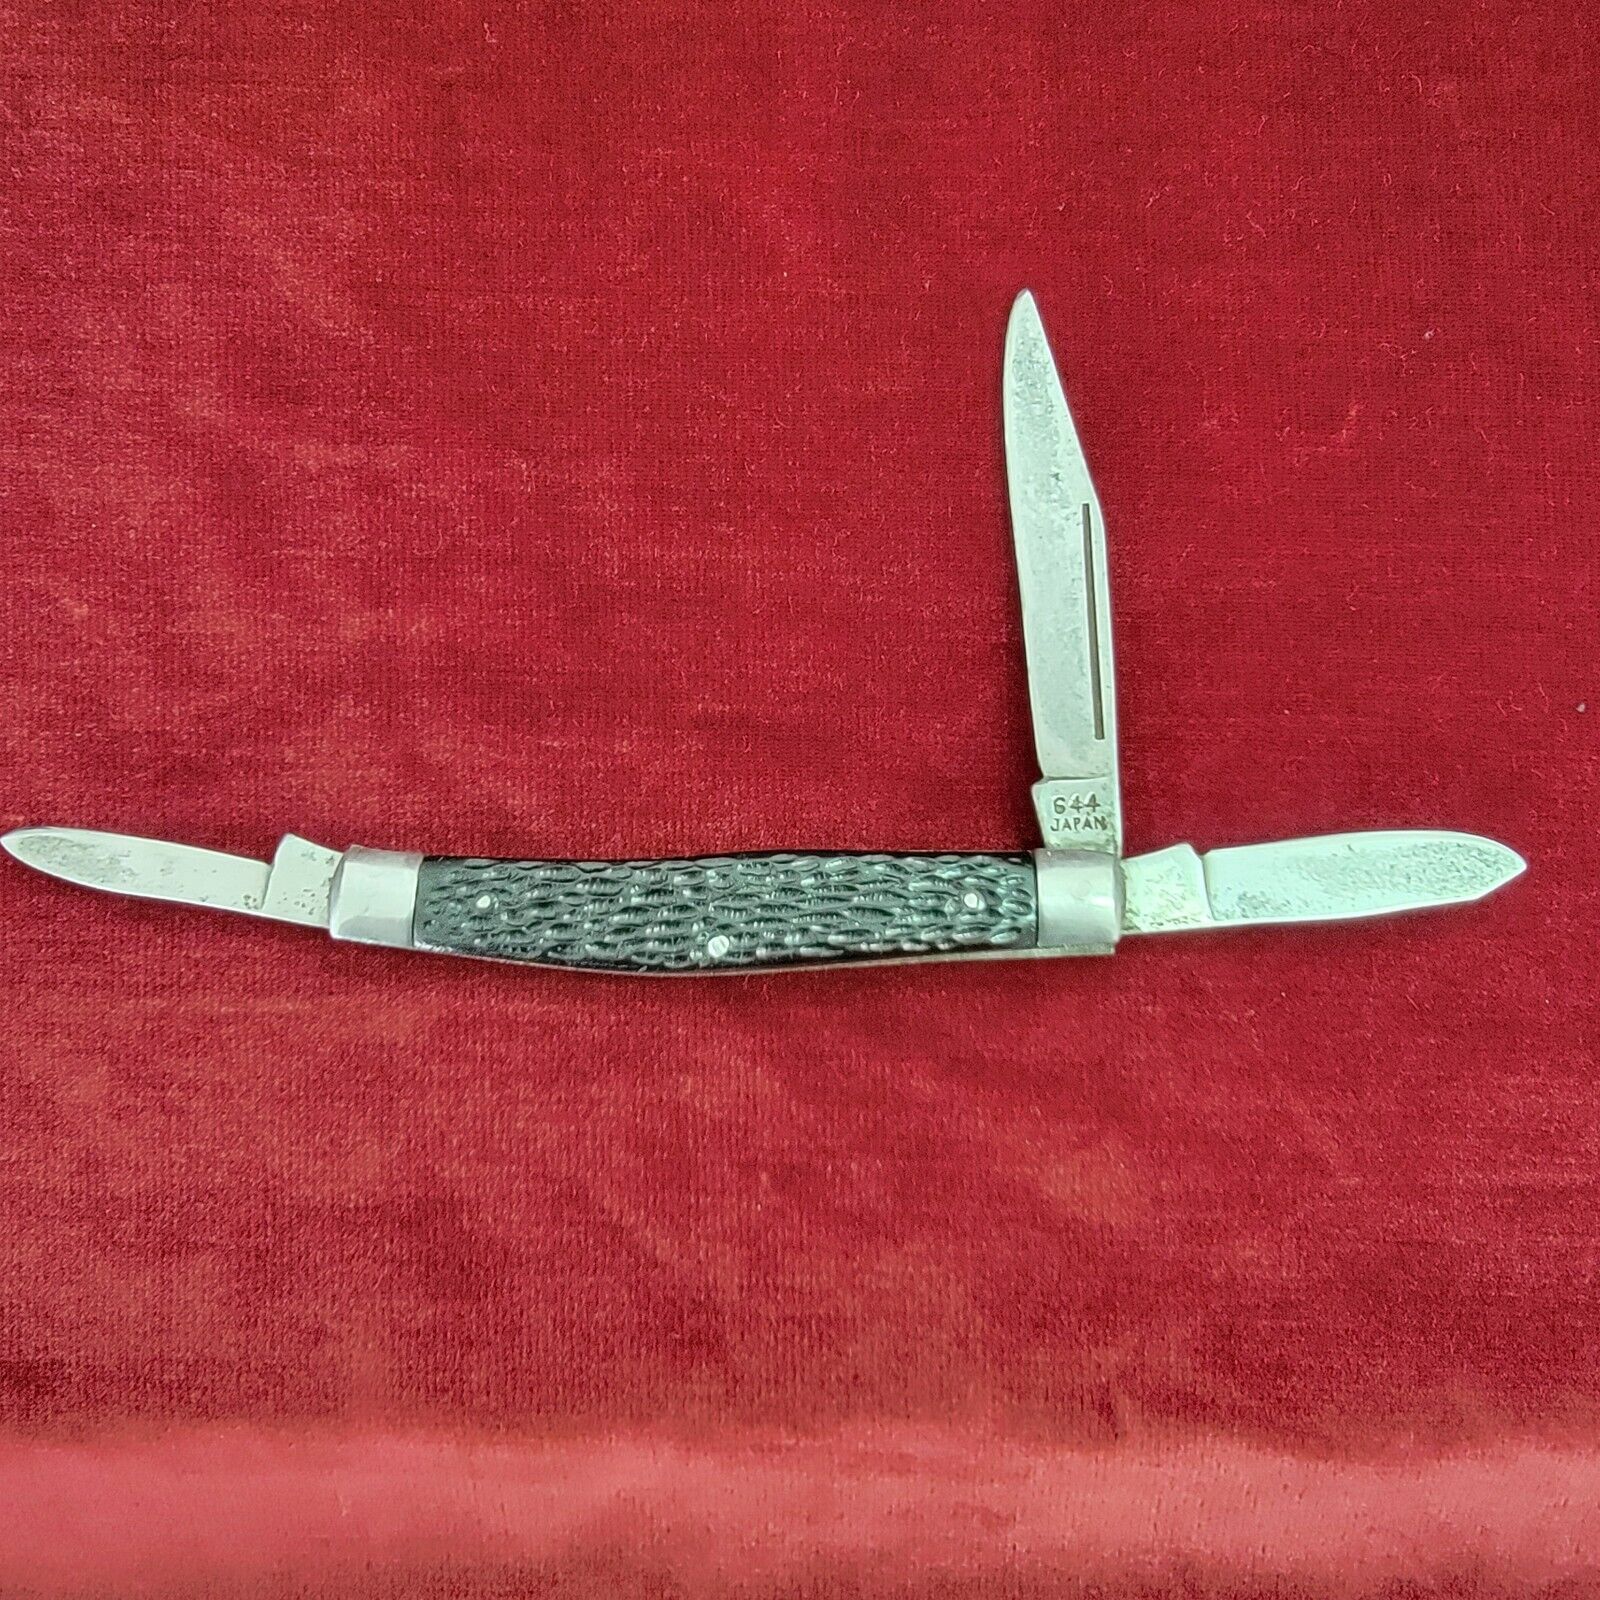 Vintage Saber Japan Model 644 Pocket Knife - Three Blades